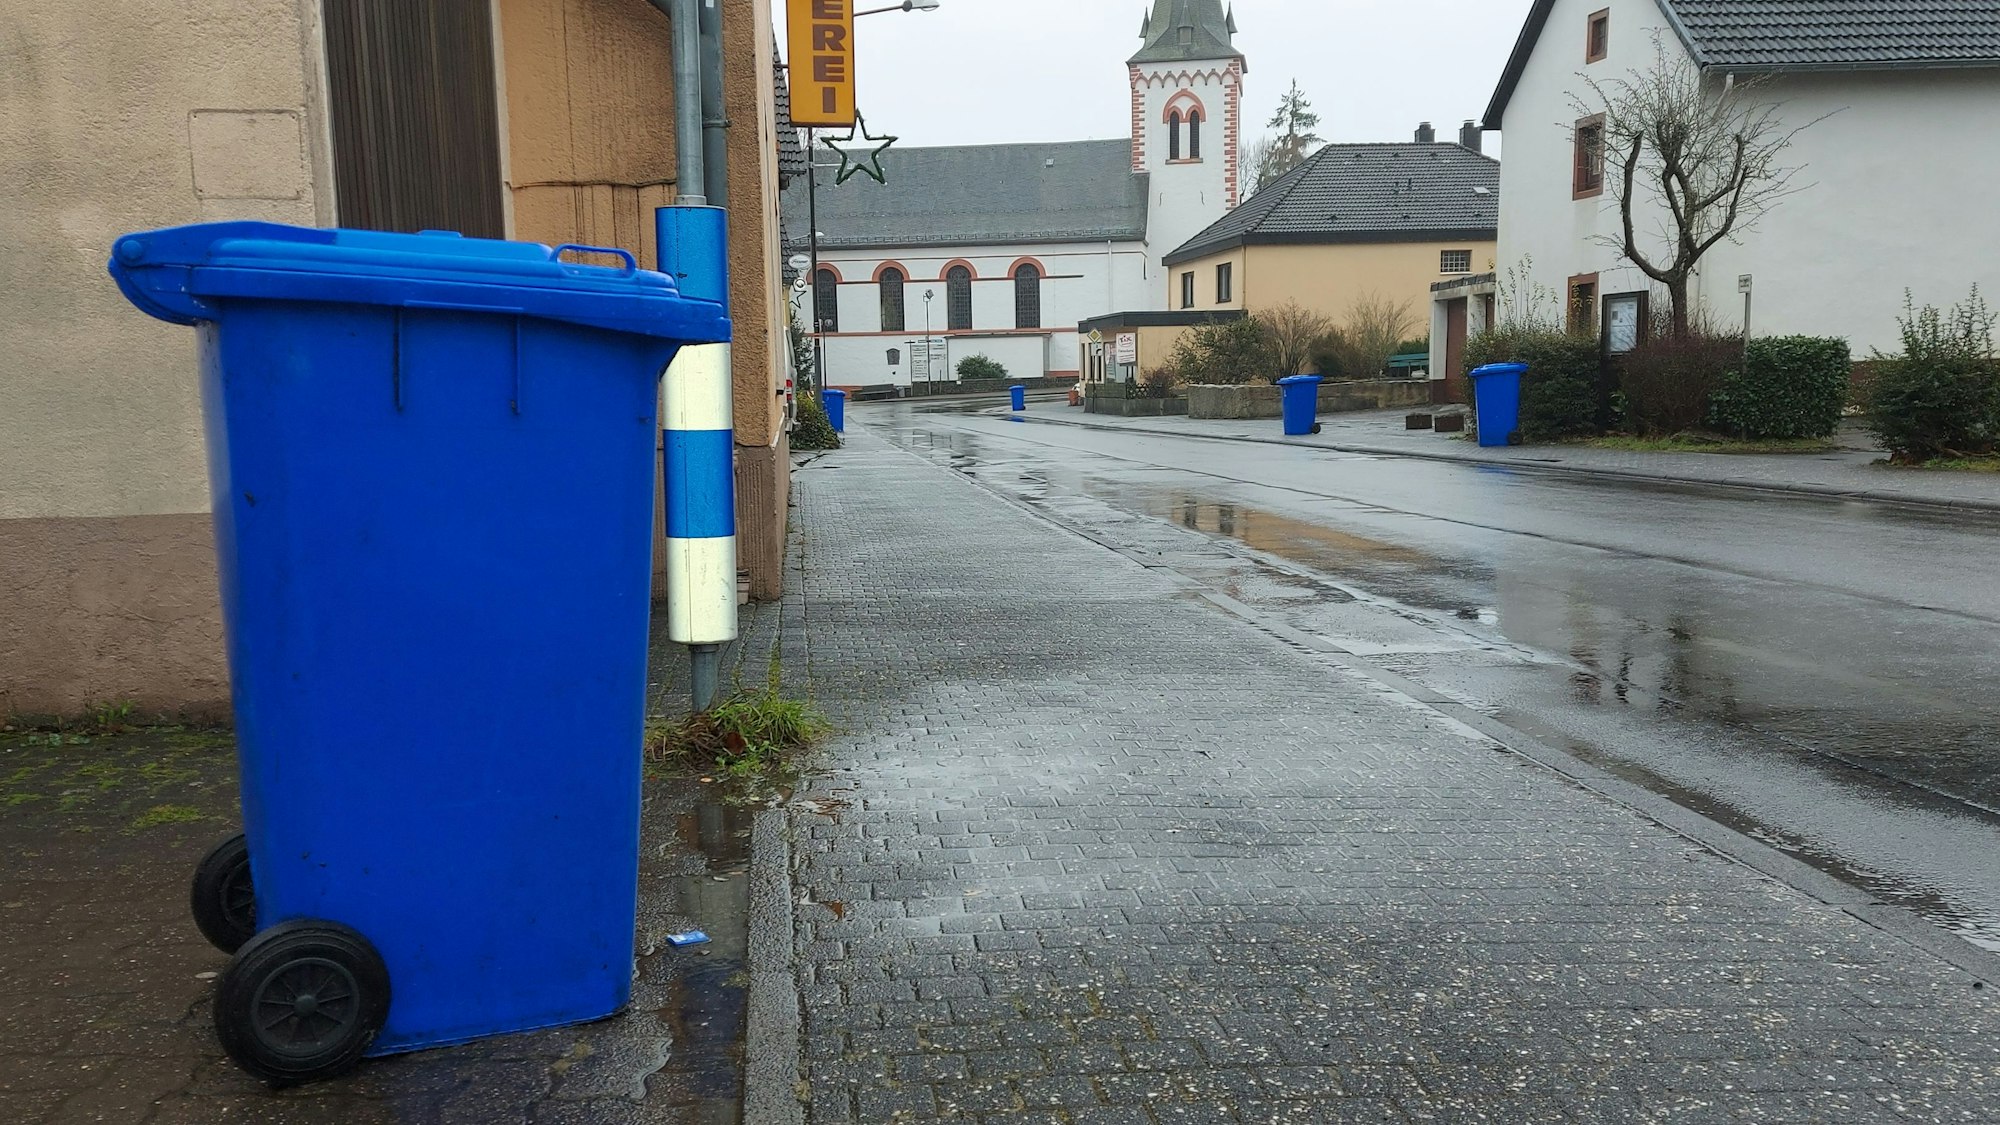 Eine blaue Altpapier-Tonne steht am Straßenrand. Im Hintergrund ist eine Kirche zu sehen.